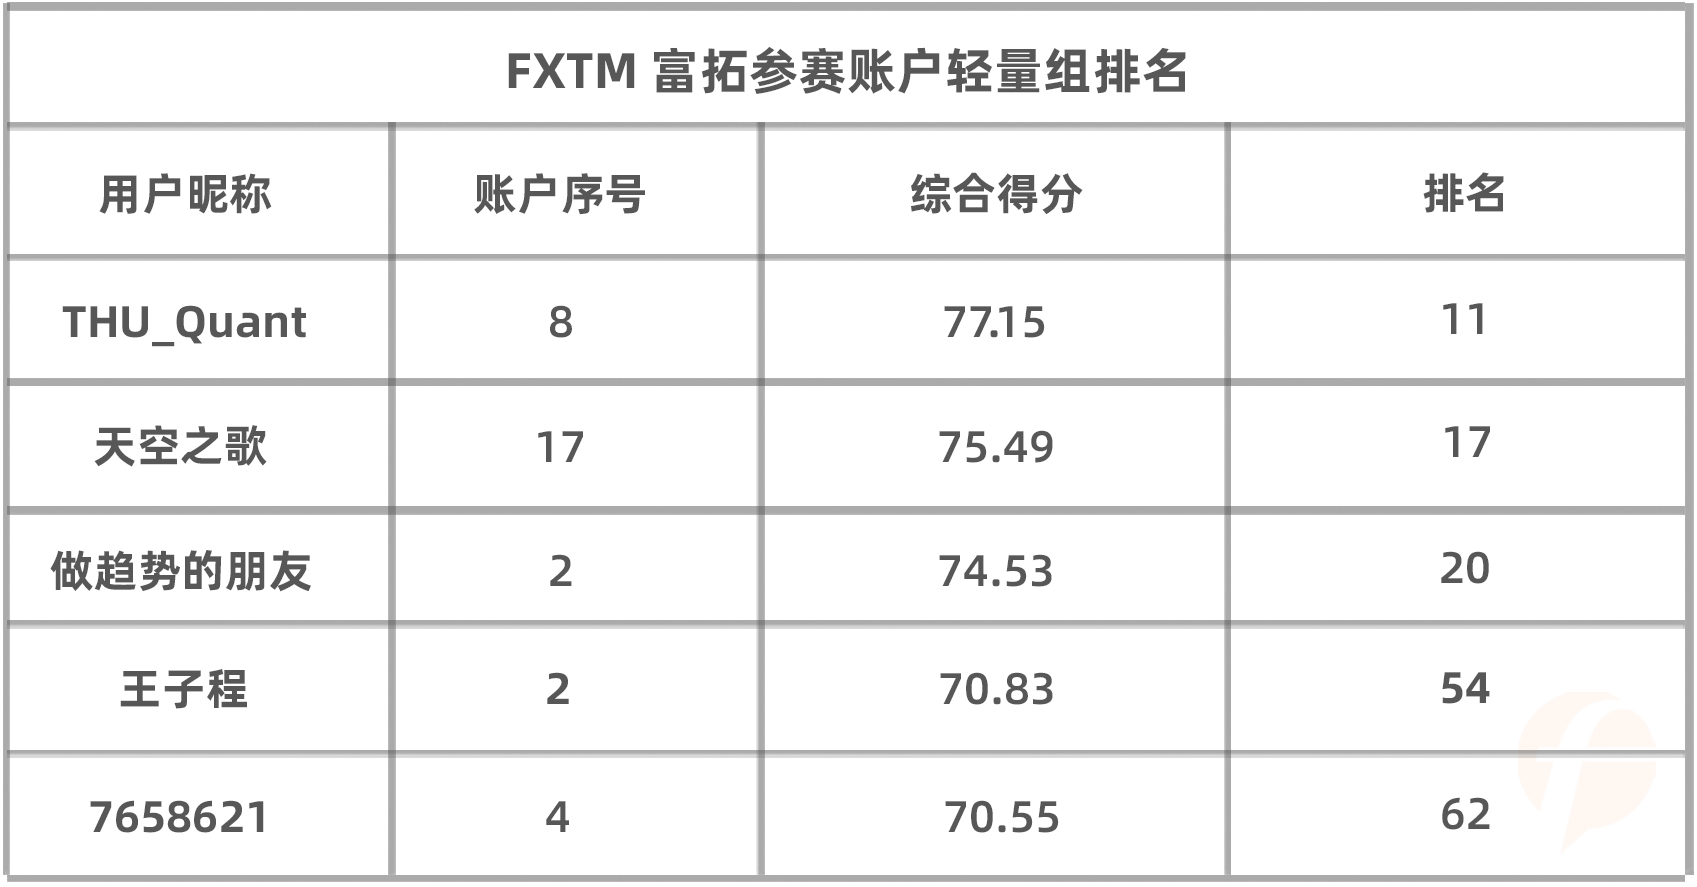 在轻量组排名最高的FXTM 富拓选手@THU_Quant 竟是清华大学在读博士？